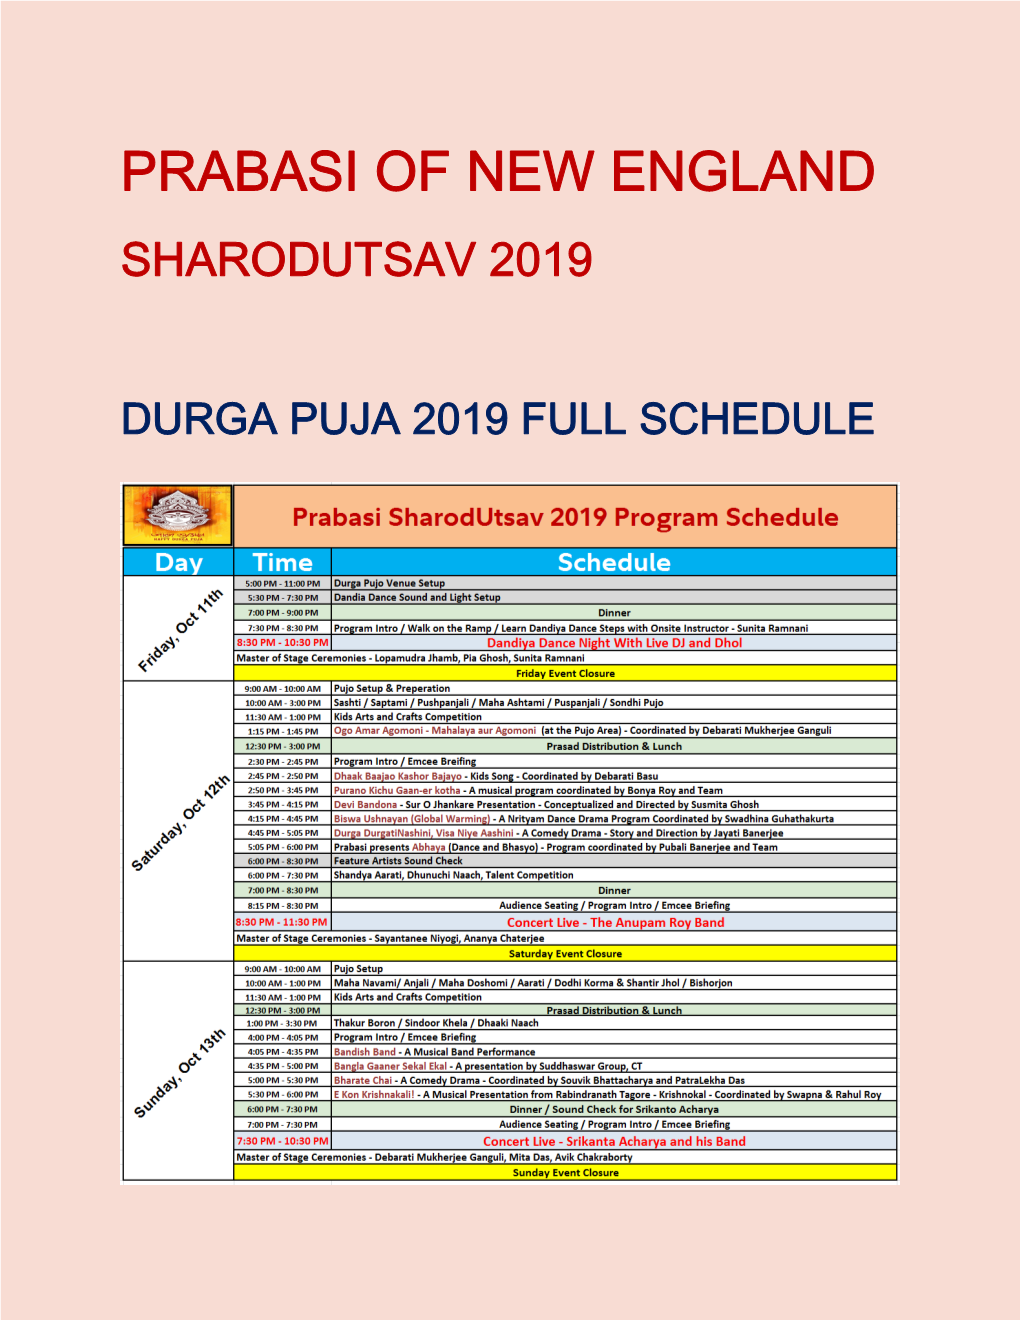 Prabasi of New England Sharodutsav 2019